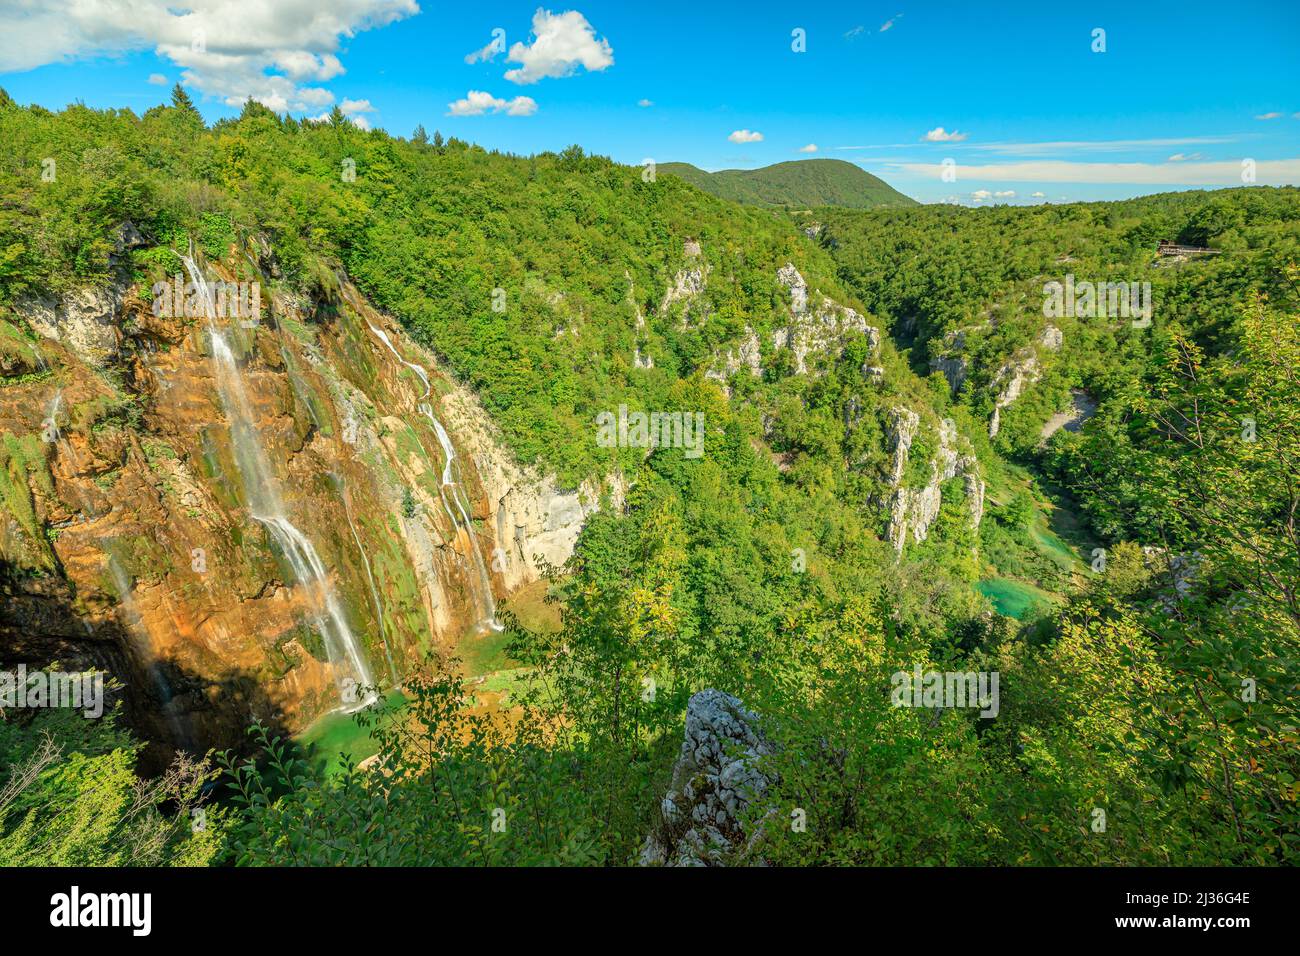 Vista aérea de la cascada Veliki Slap del Parque Nacional de los Lagos de Plitvice, en Croacia, en la región de Lika. Declarado Patrimonio de la Humanidad por la UNESCO de Croacia Foto de stock